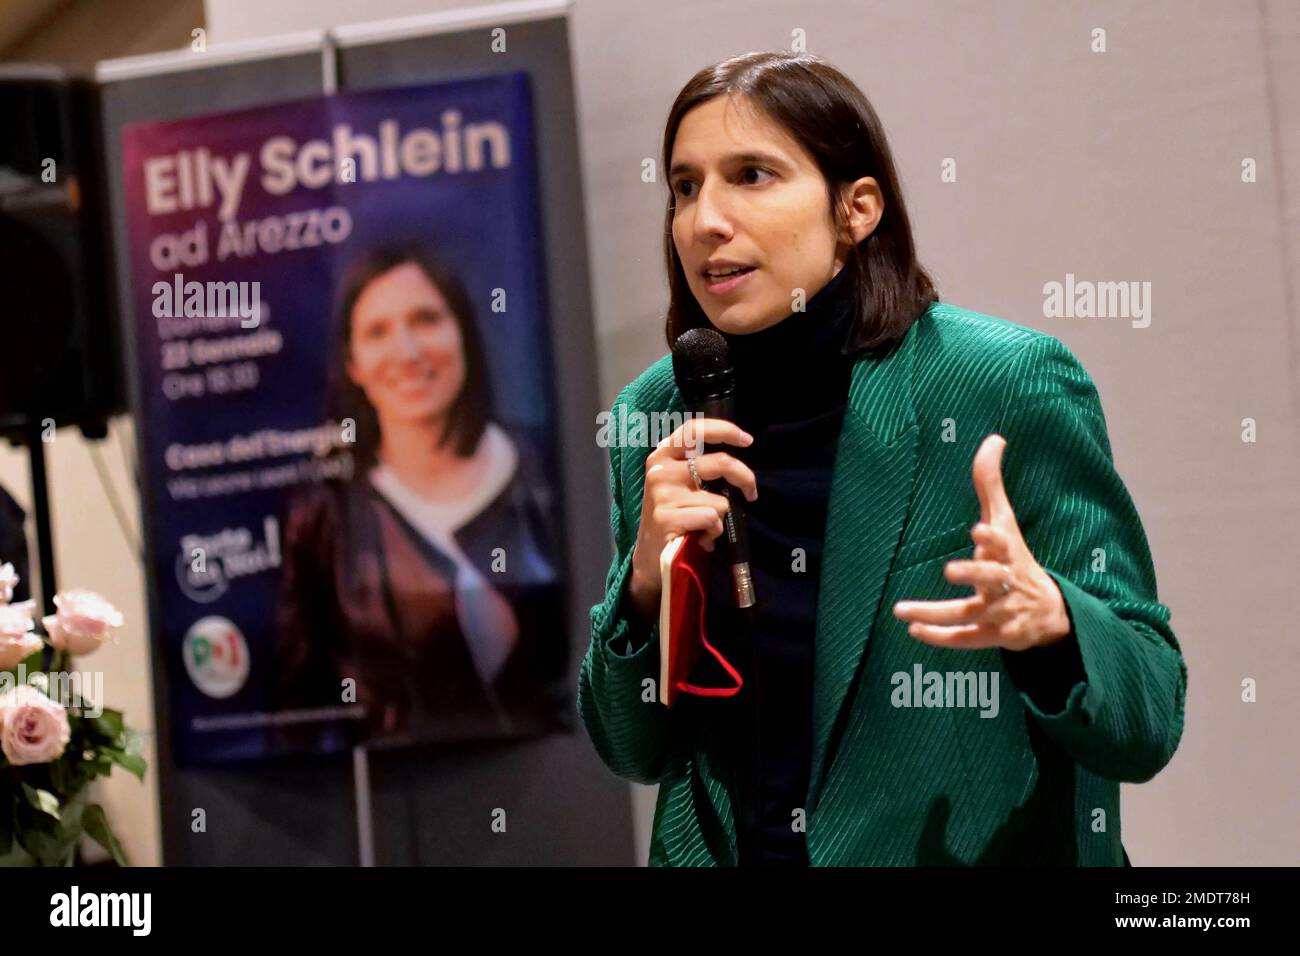 Italien, Arezzo, 22. Januar 2023 : Elly Schlein stellt ihre Kandidatur als Sekretärin der Demokratischen Partei (Partito Democratico) vor Foto © Daiano Cristini/Sintesi/Alamy Live News Stockfoto